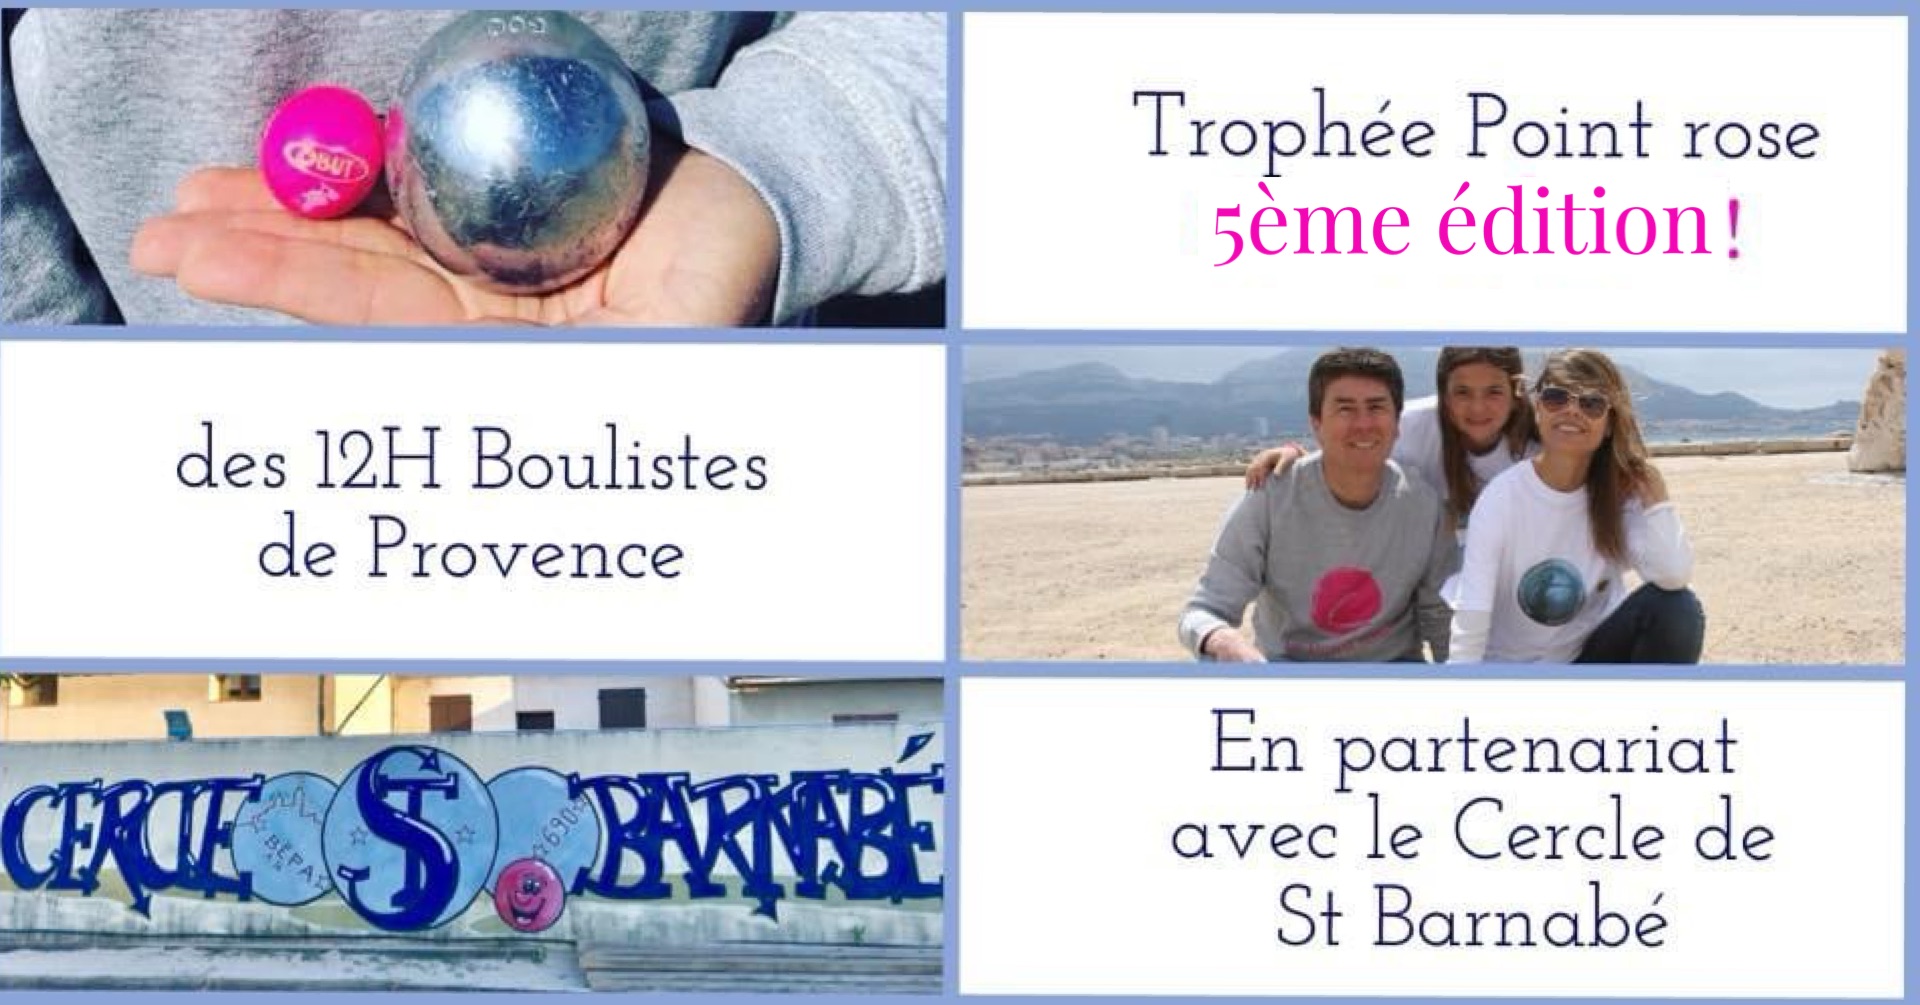 Trophée Point rose avec les 12h Boulistes de Provence et le Cercle Saint Barnabé